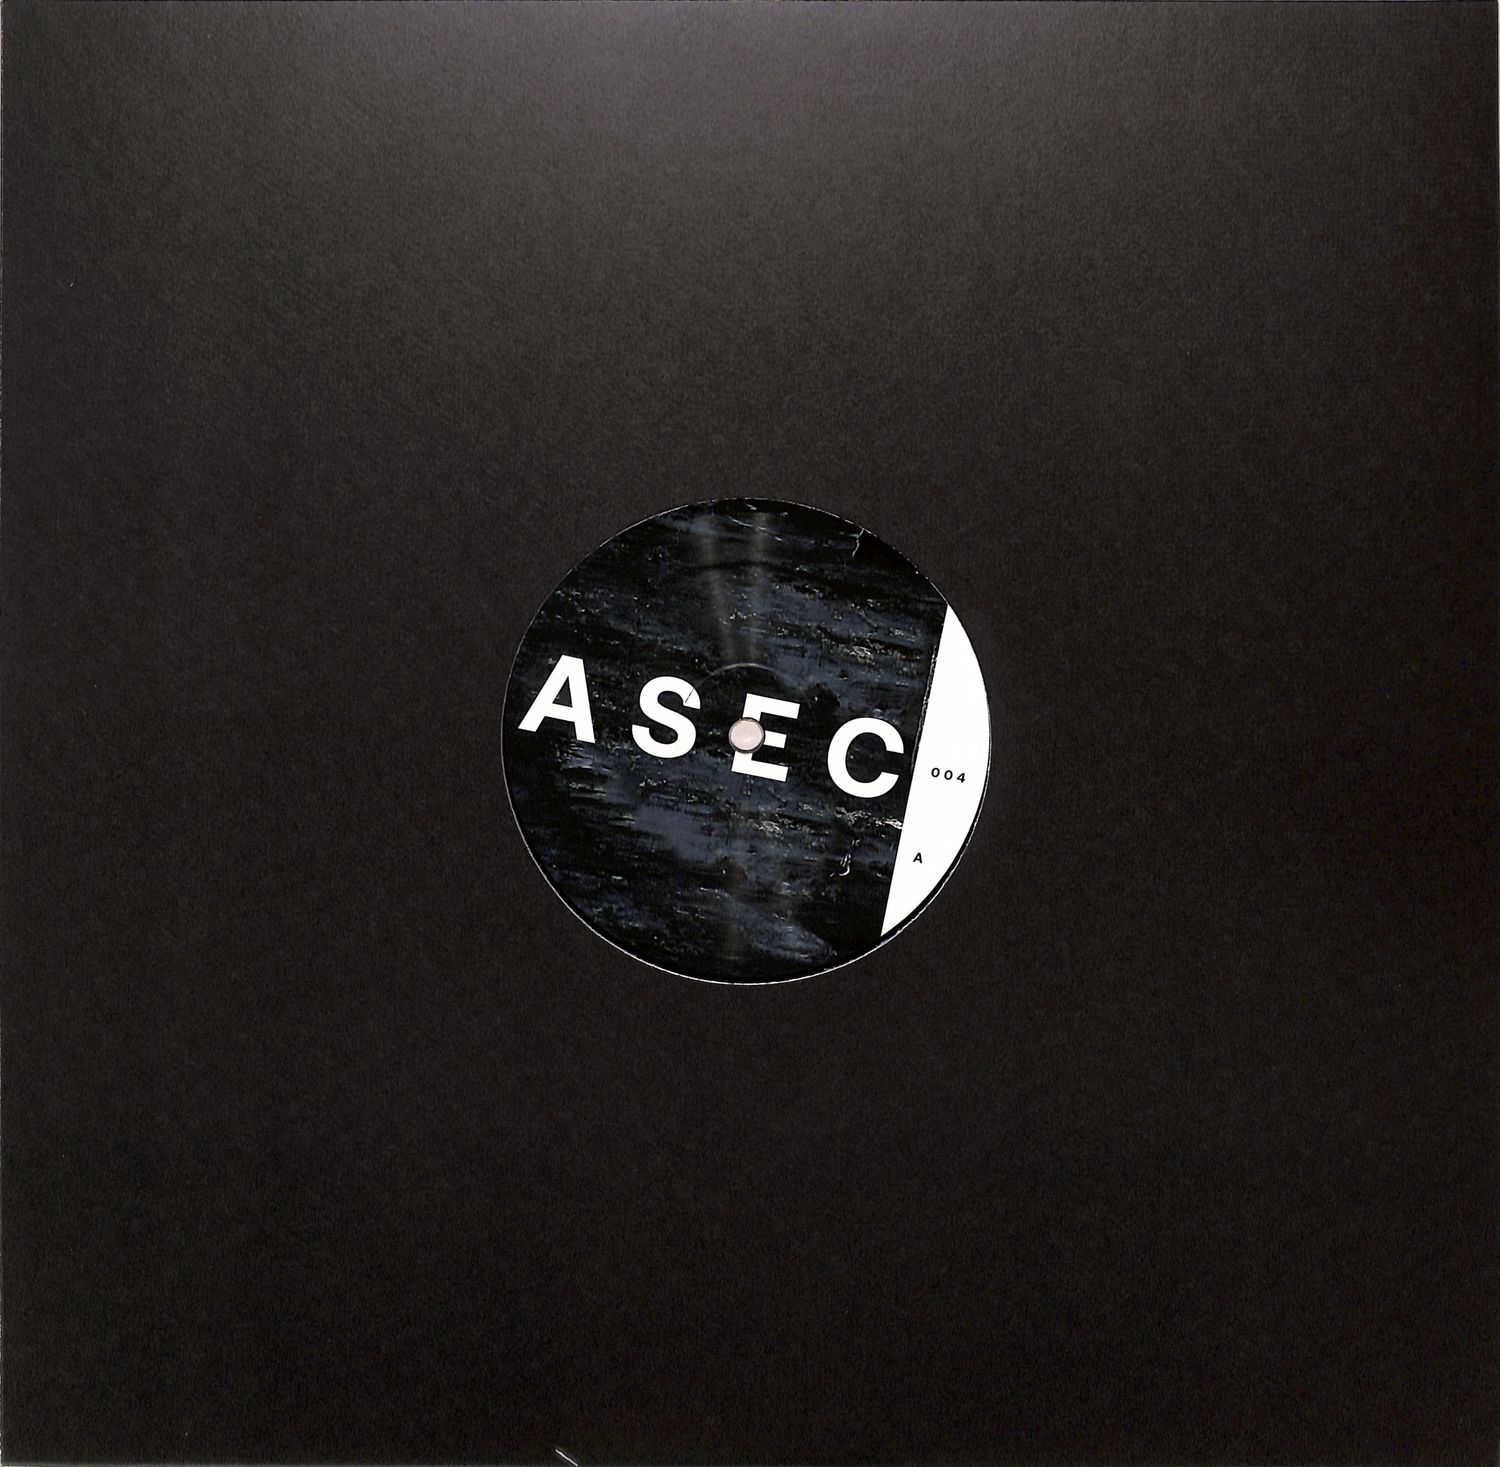 ASEC - ASEC004